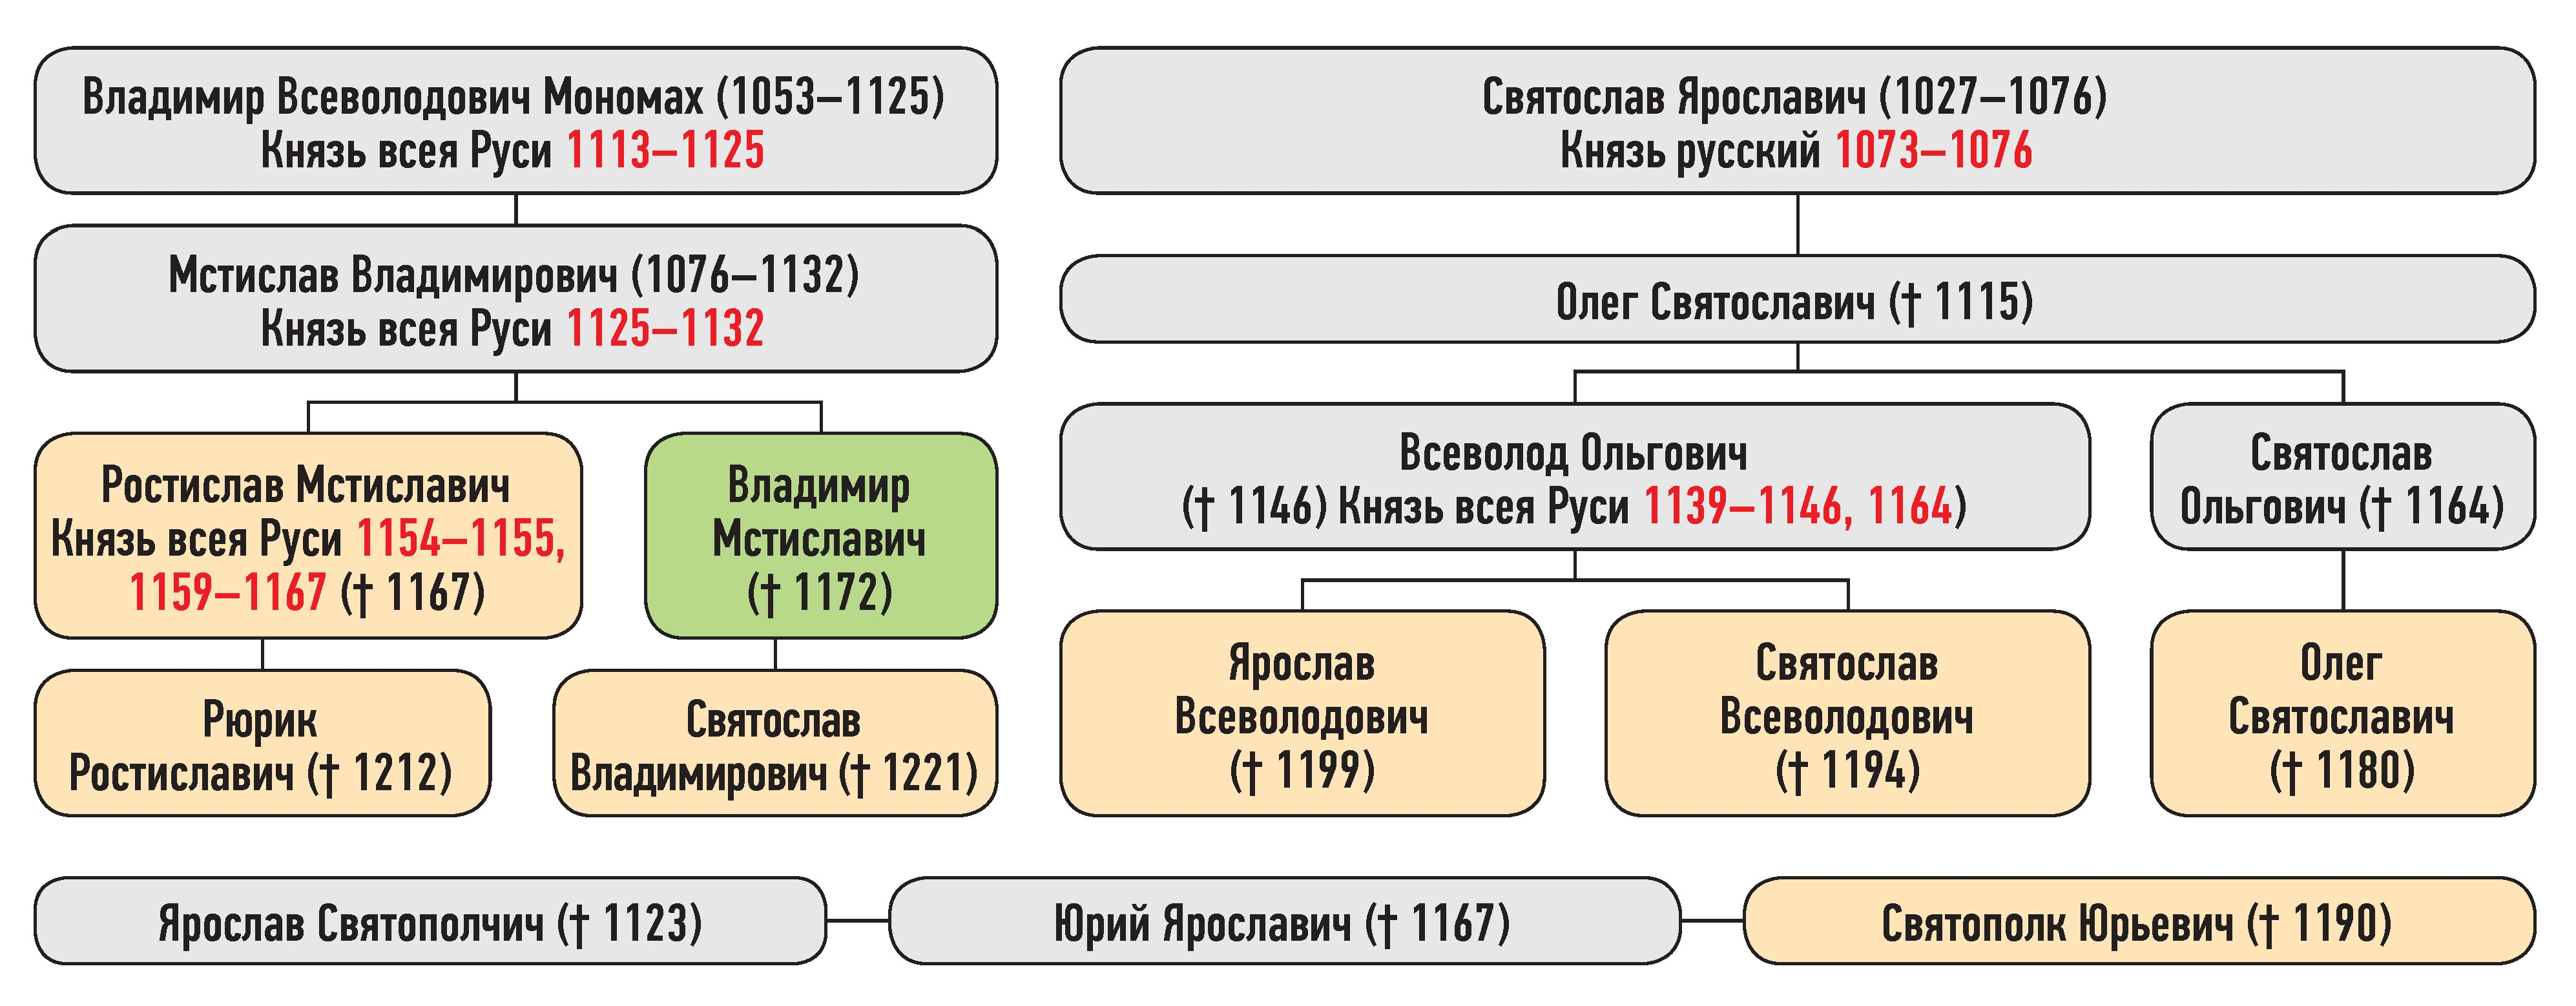 Генеалогическая схема к усобице Ростислава Мстиславича и Владимира Мстиславича в 1162 г.